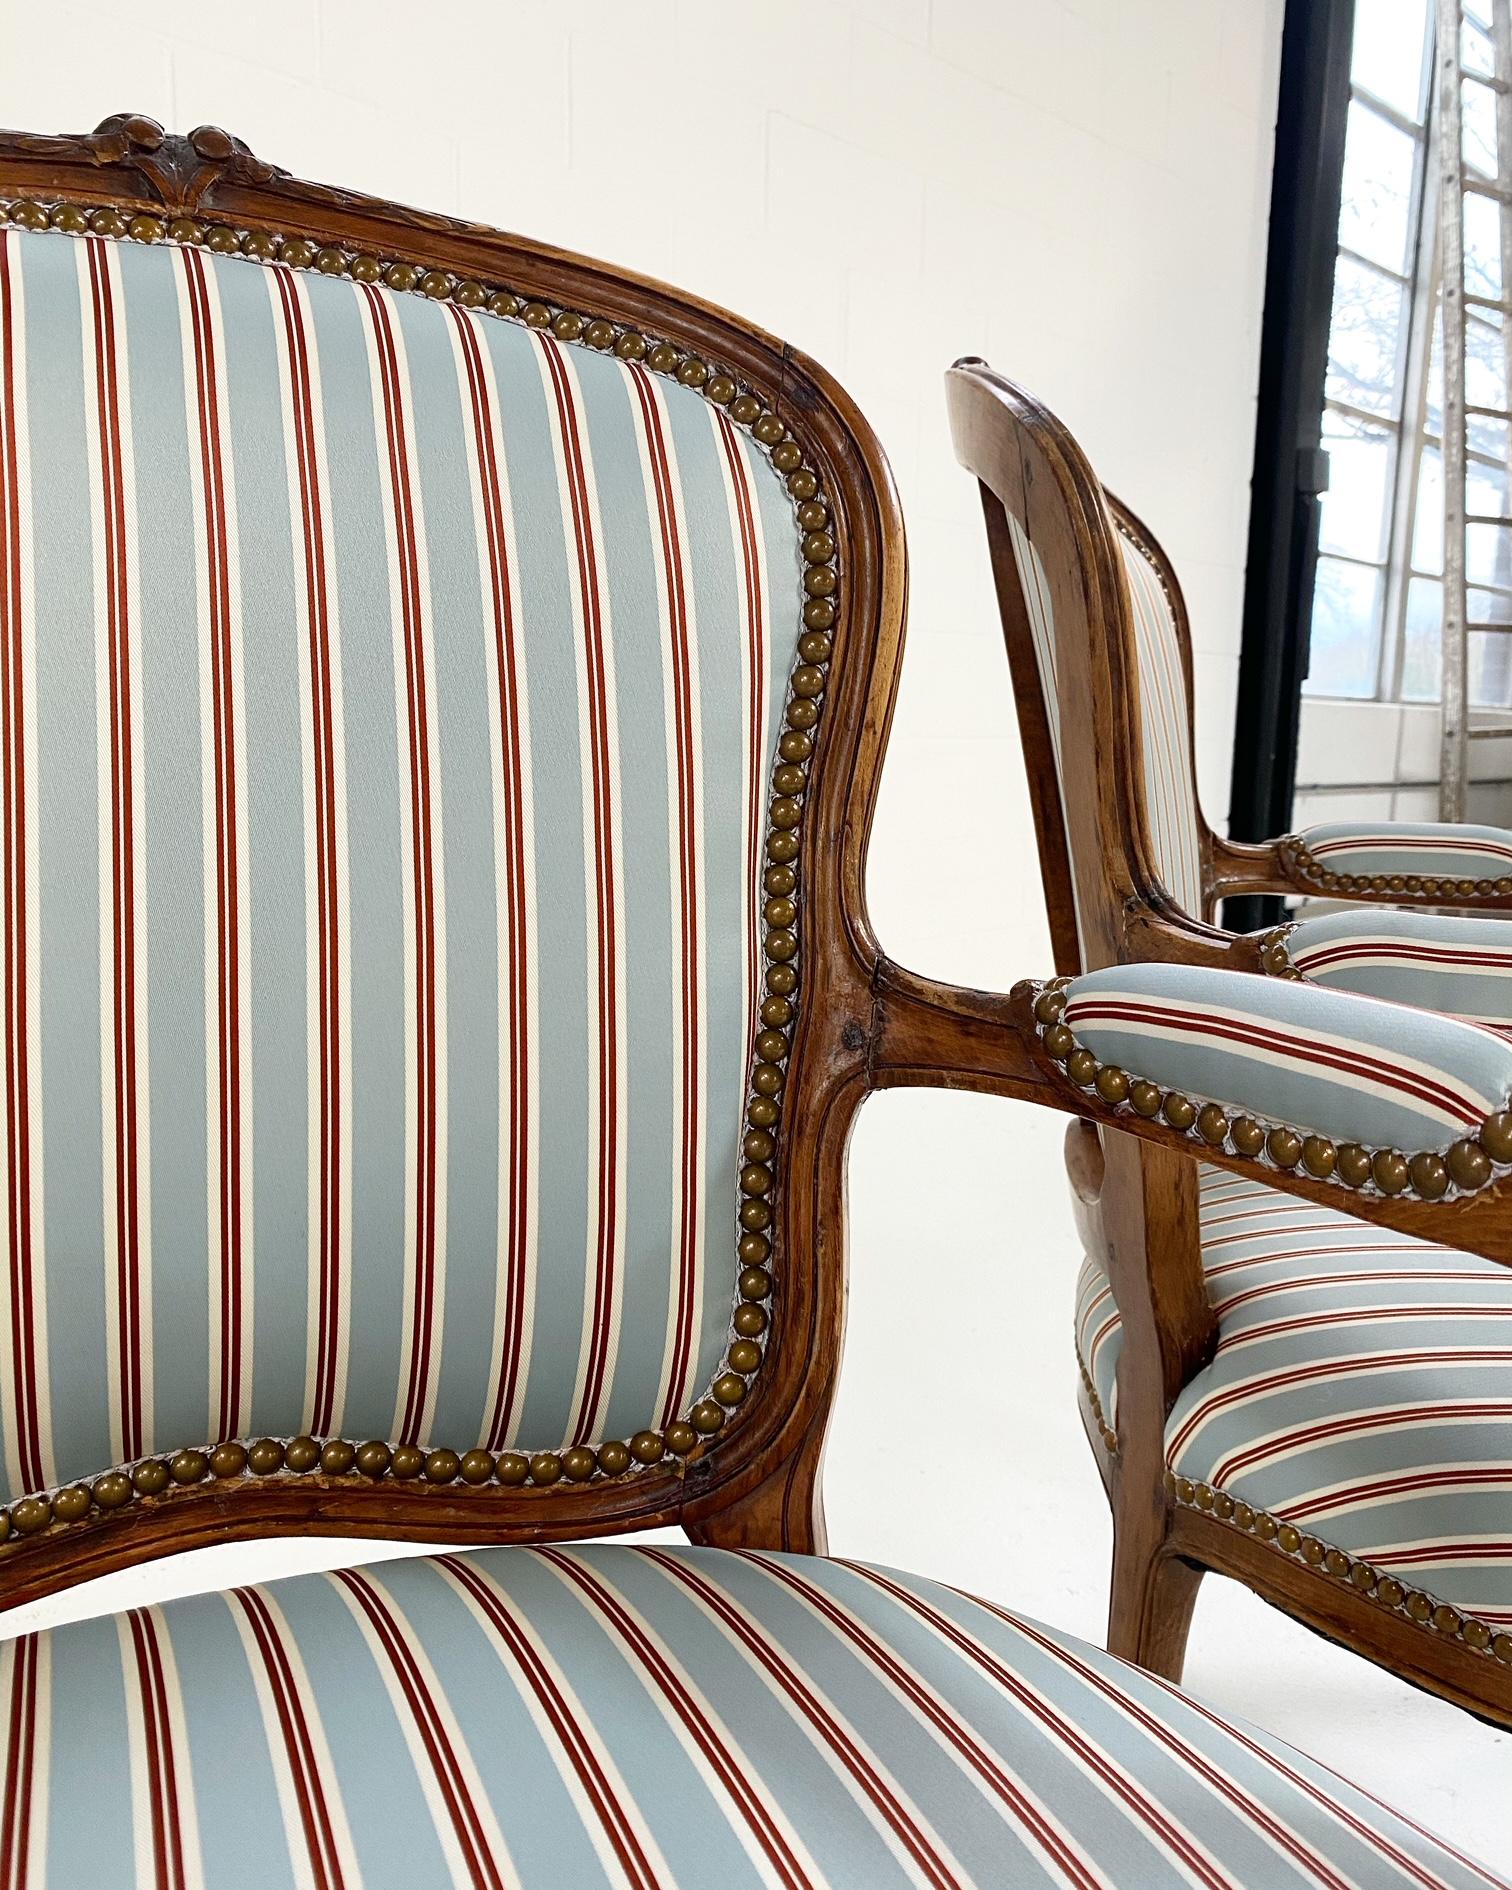 Nous aimons le cadre d'une chaise Louis. Le magnifique bois de hêtre est parfaitement vieilli et était mûr pour quelque chose de frais et de classique. Nous avons donc choisi un magnifique tissu en soie spécialement fabriqué par Dedar pour notre